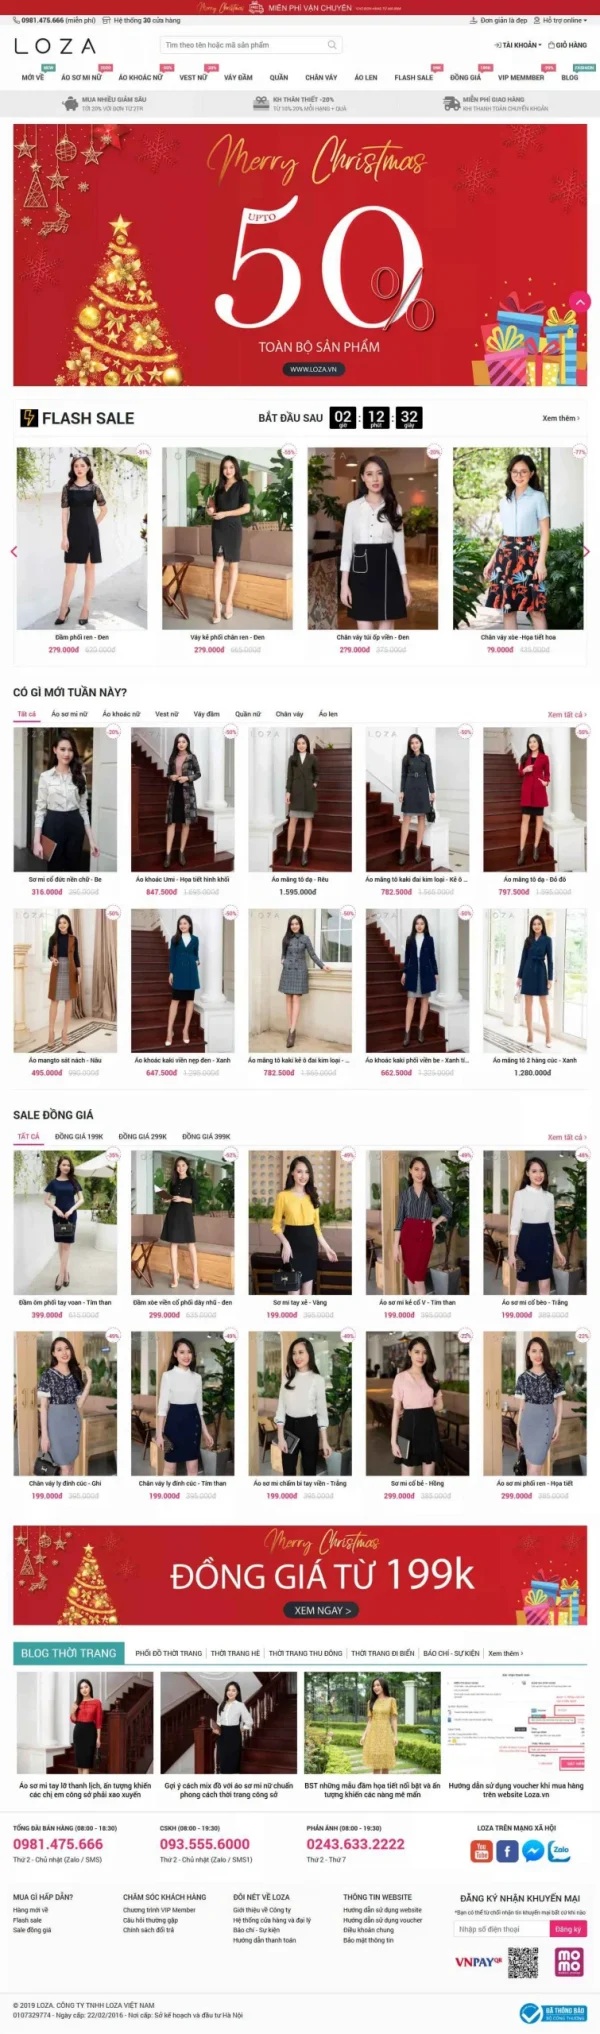 Mẫu giao diện website thời trang Loza Việt Nam